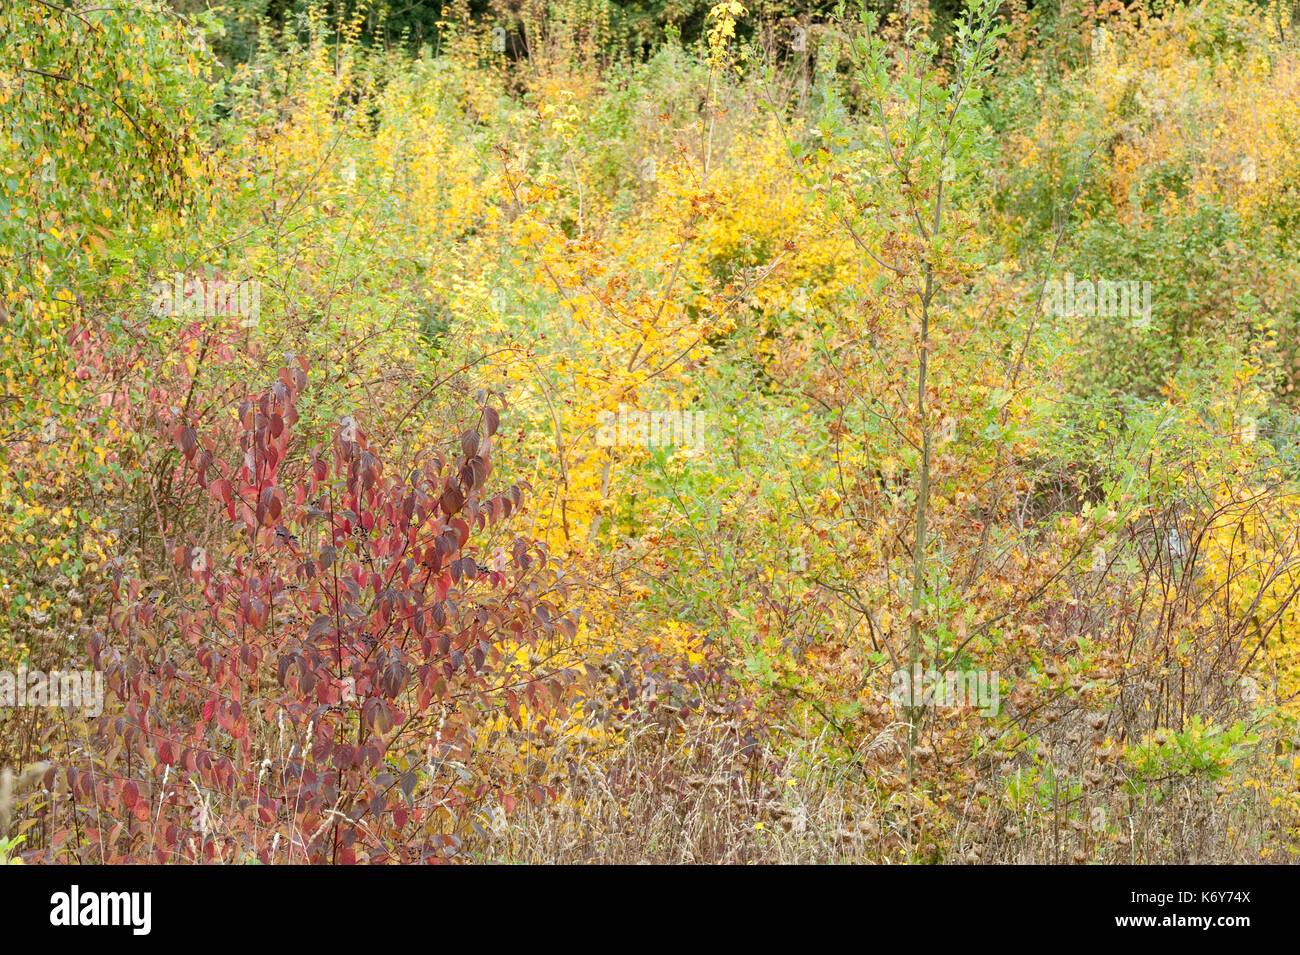 Gemischte Herbst farbige Bäume, ranscombe Farm Nature Reserve, Kent GROSSBRITANNIEN, Feld Ahorn, Buche & Hartriegel, Gelb, Grün, Rot Stockfoto